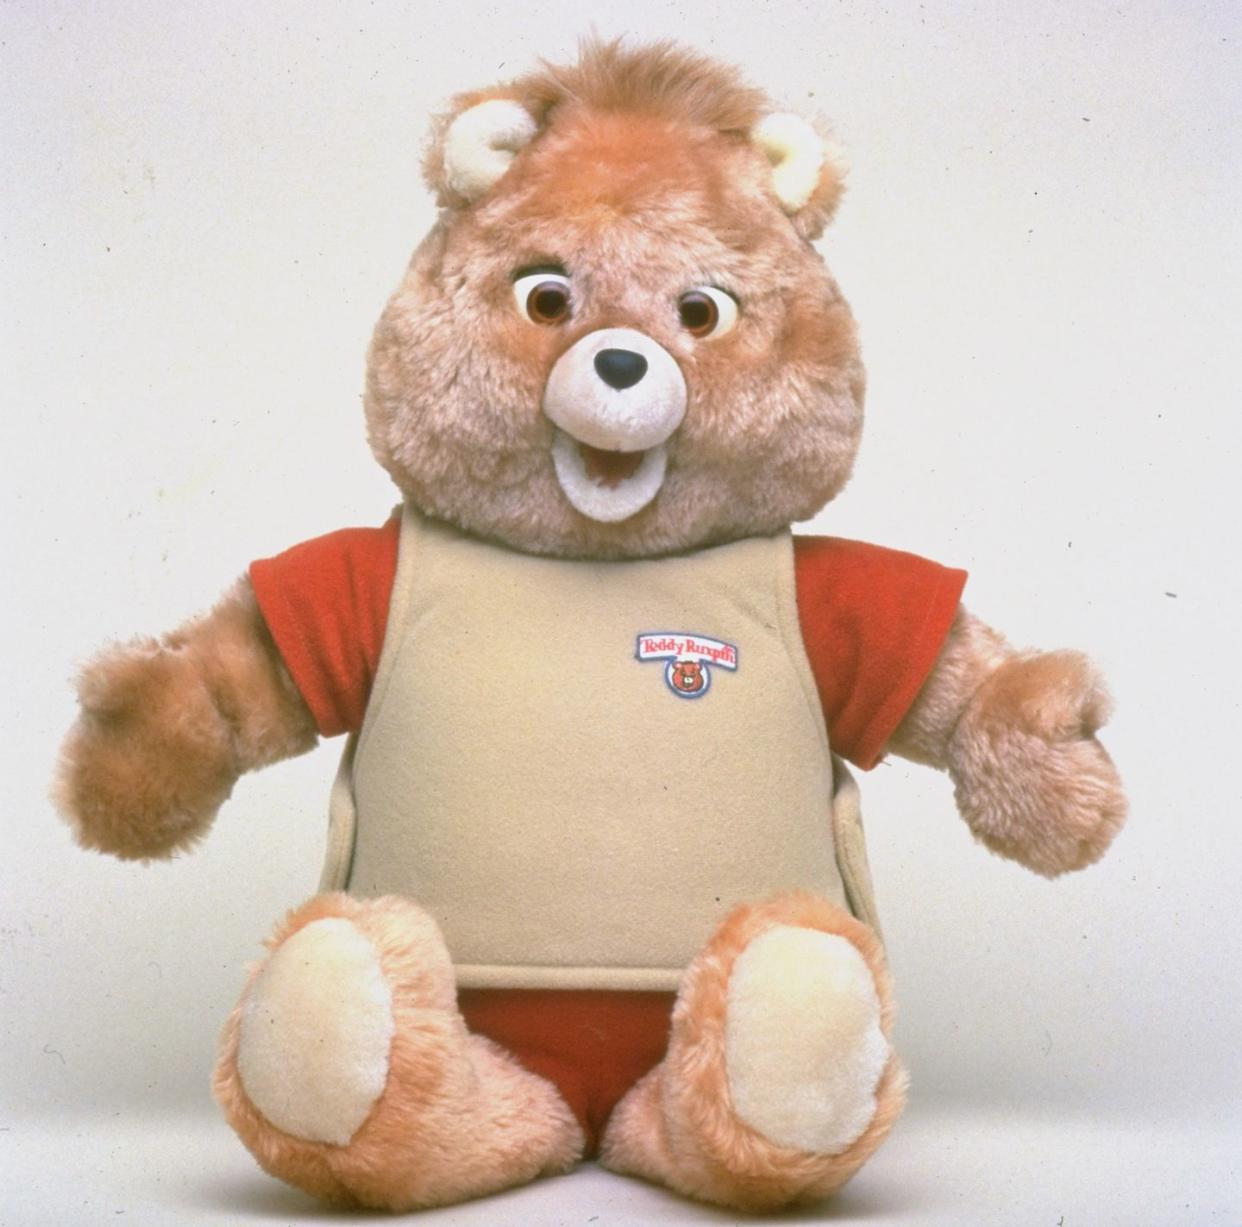 teddy ruxpin bear, w built in microchip